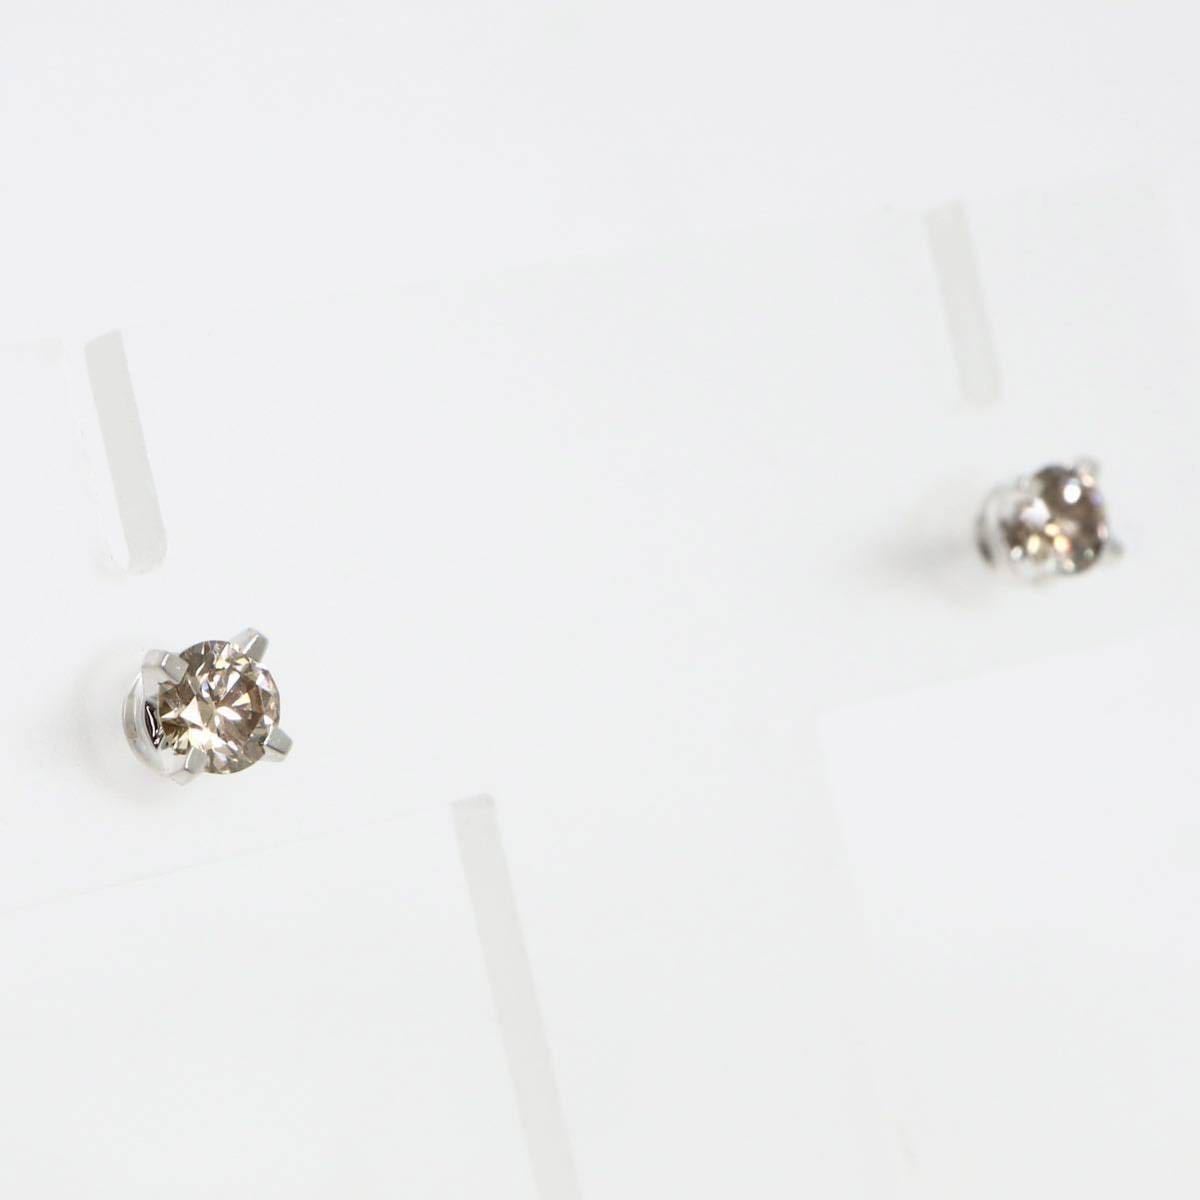 KASHIKEY(カシケイ)◆K18 天然ブラウンダイヤモンド ピアス◆M 0.9g 0.17ct 0.16ct ジュエリー diamond earring pierce DH5_画像3